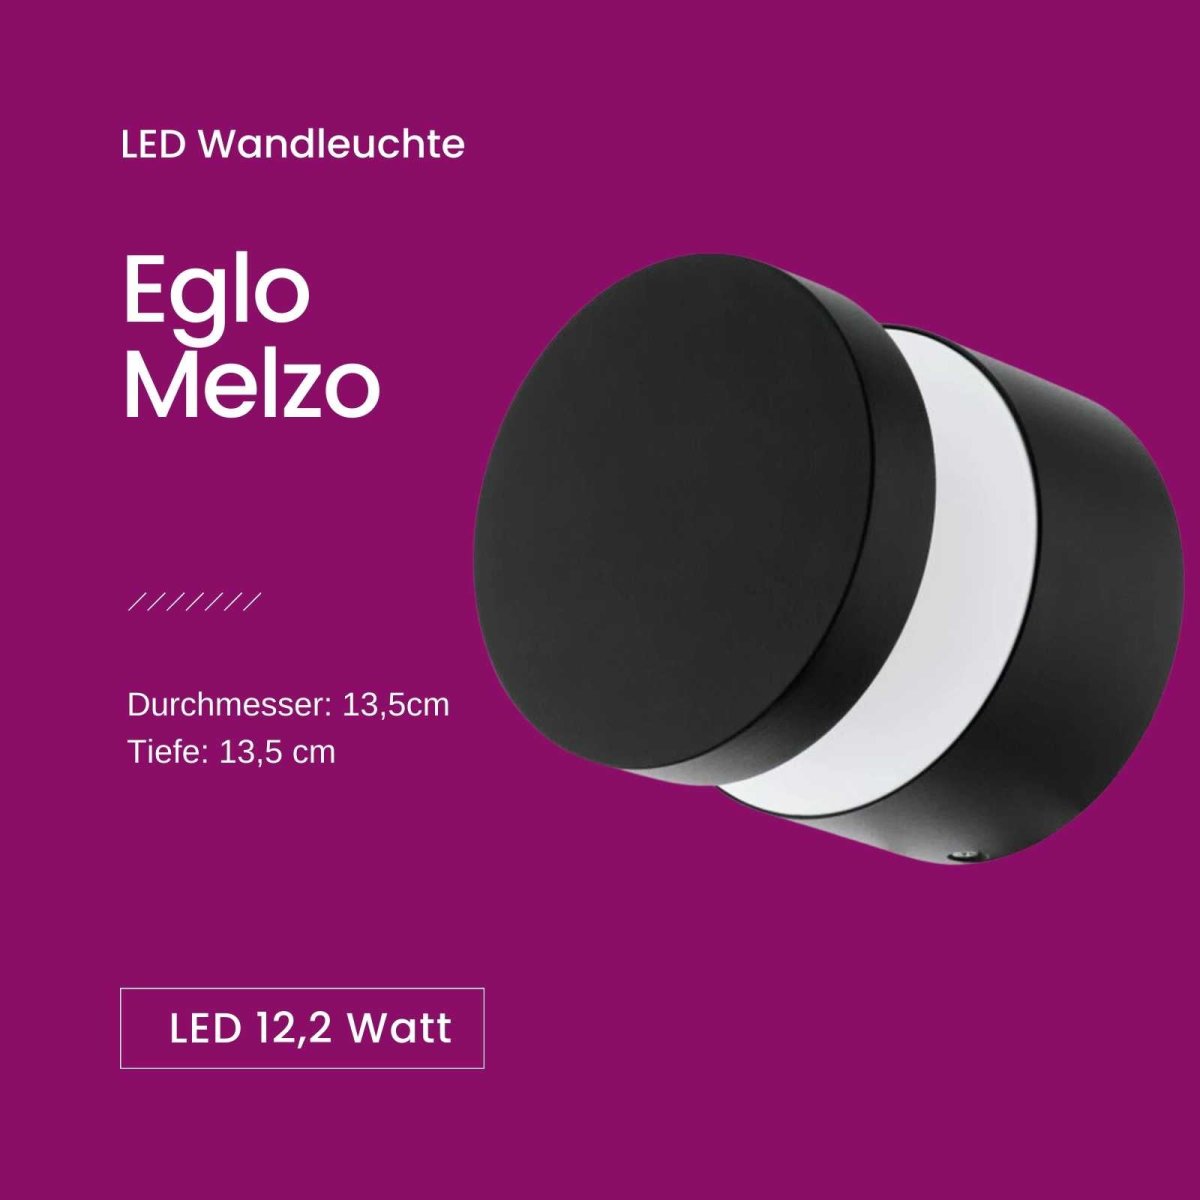 € IP44 LED Gartenlampe Melzo Eglo schwarz 29,00 12,2, Außenleuchte Wandleuchte